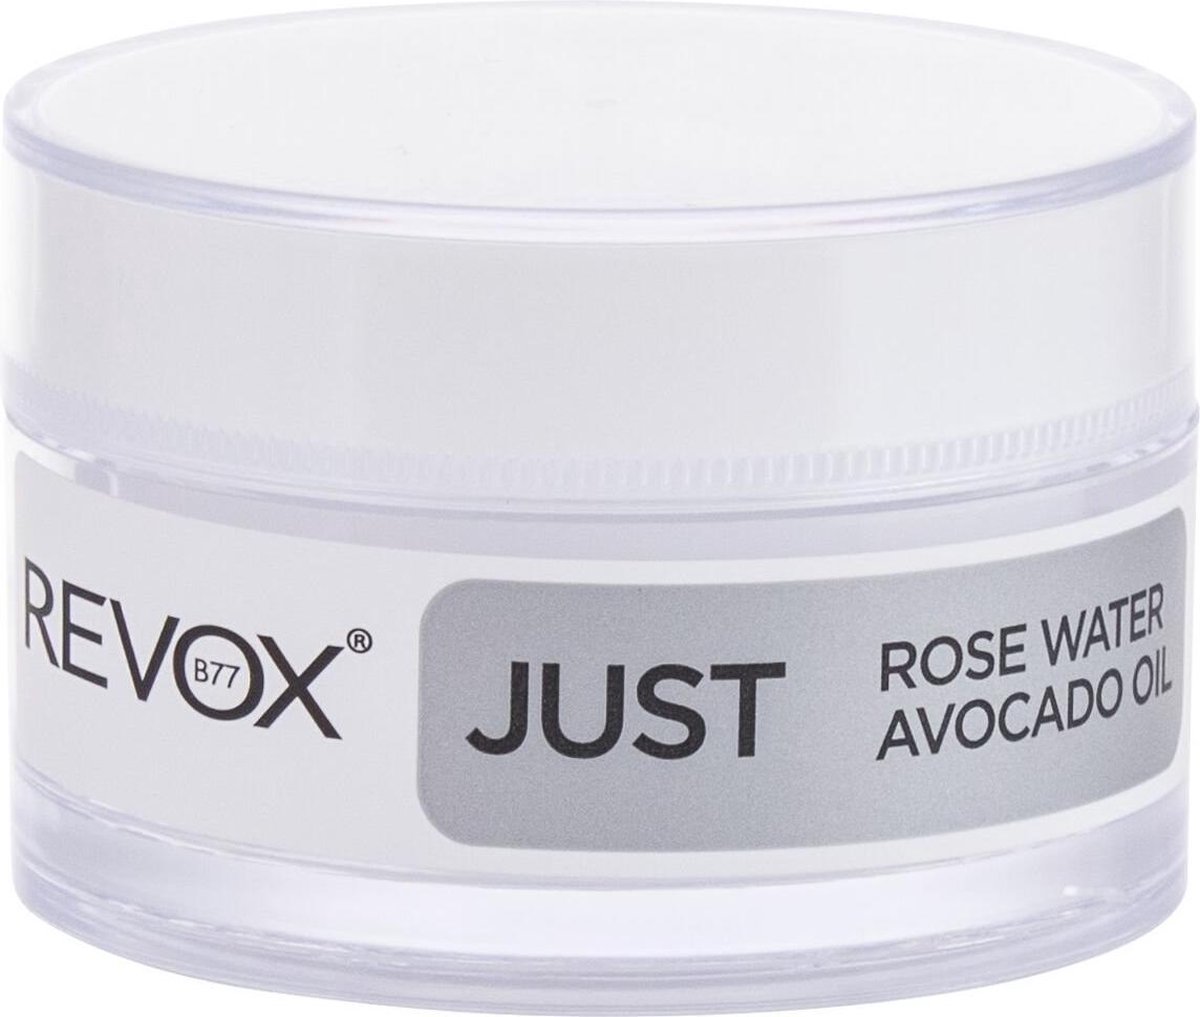 Revox JUST B77 Eye cream 50 ml